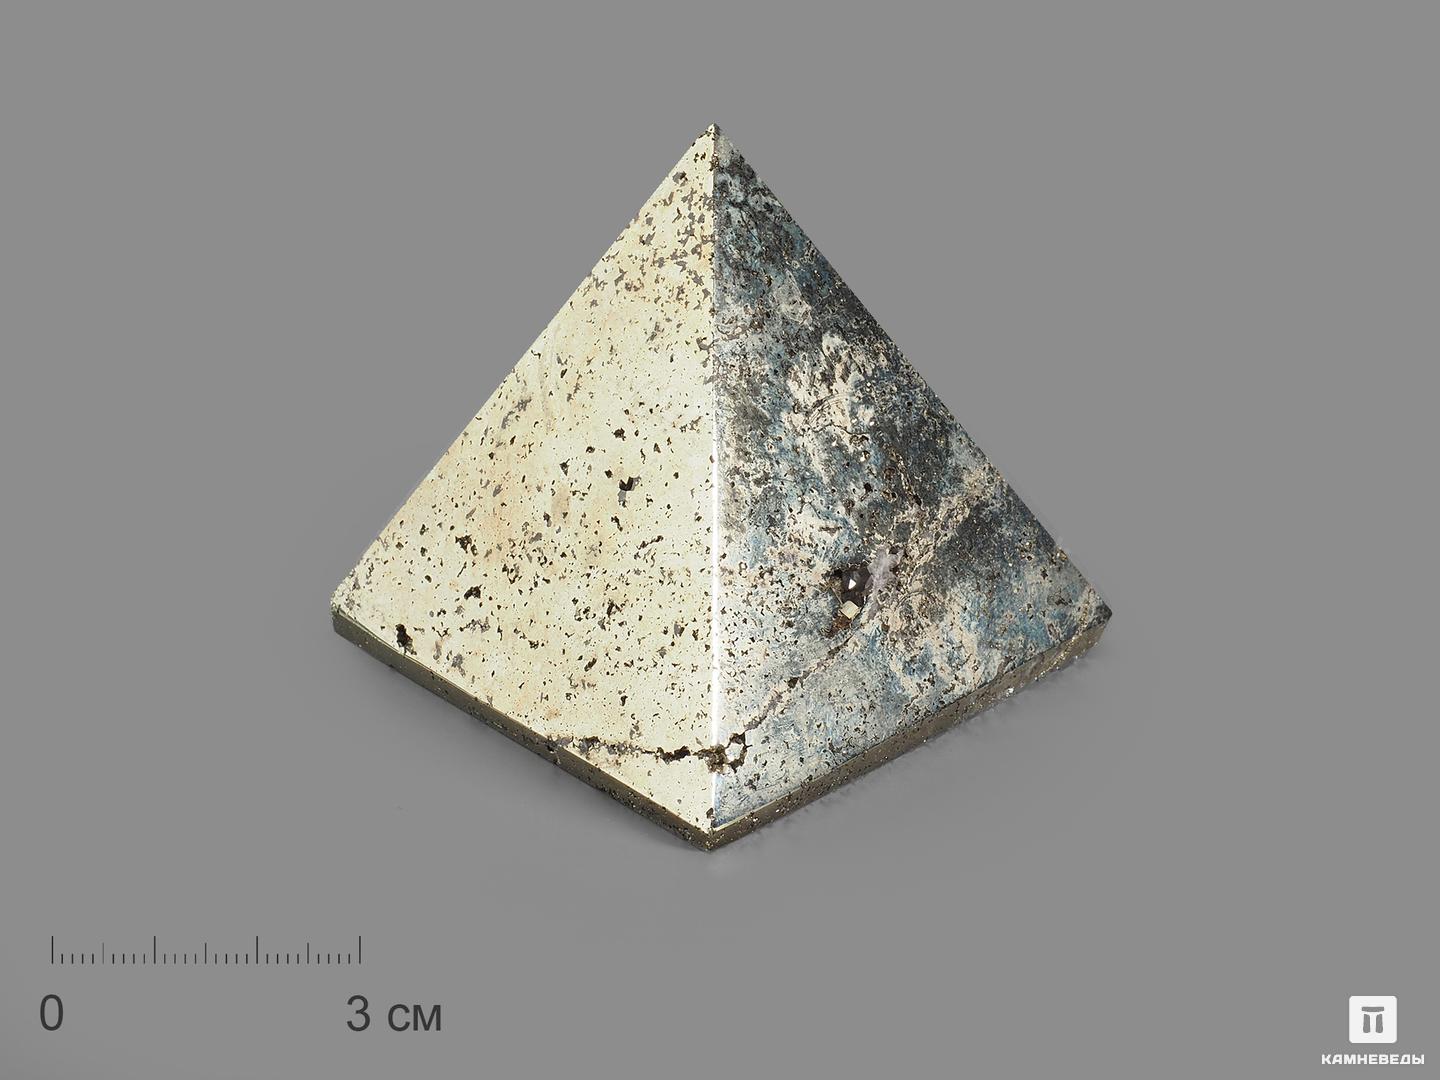 Пирамида из пирита, 5,6х5,5х5,3 см